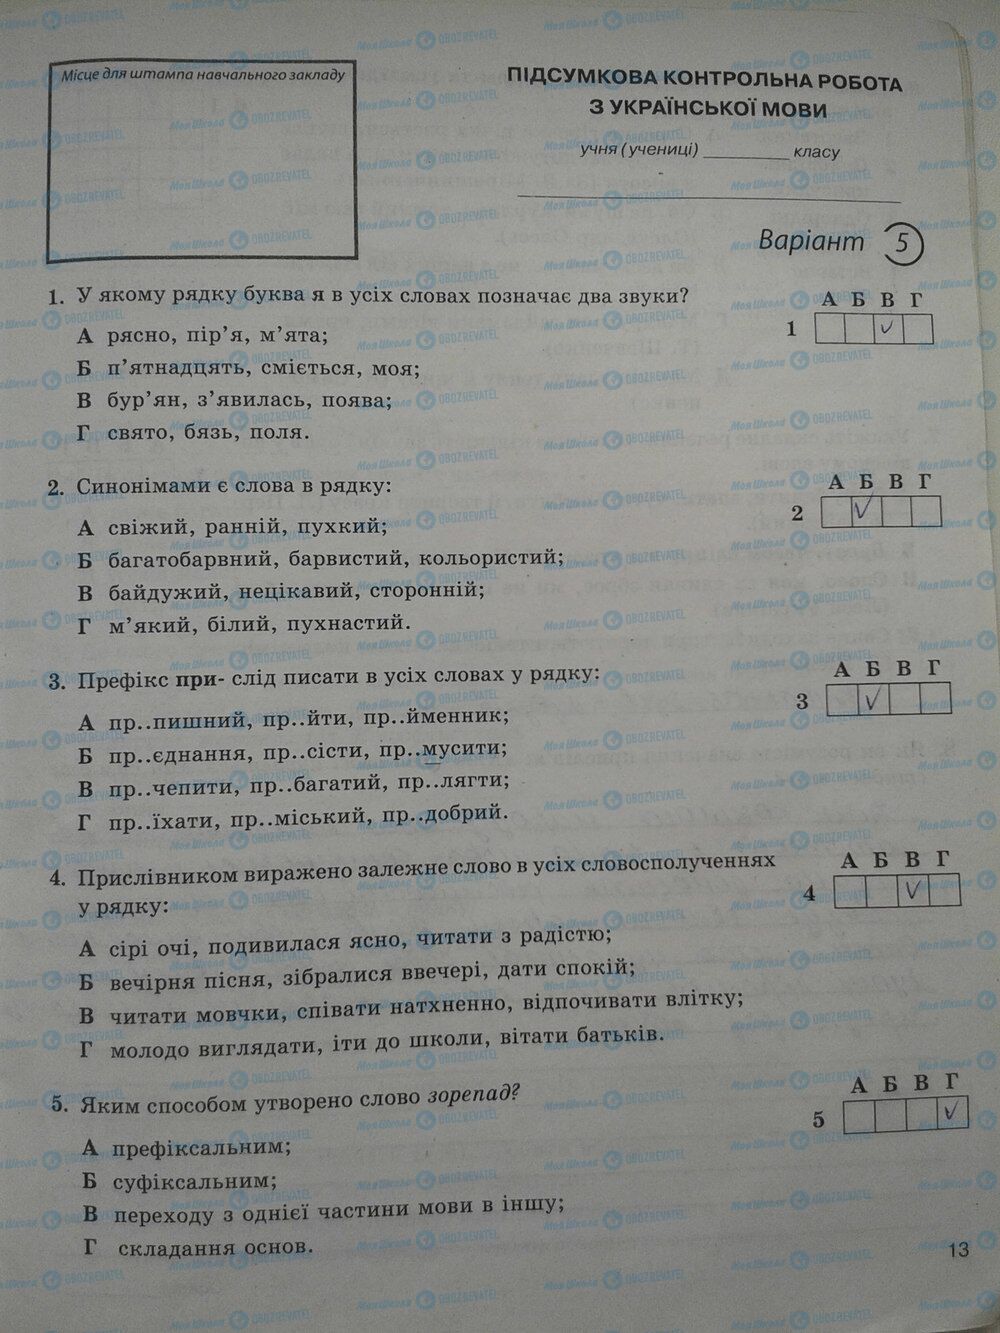 ГДЗ Укр мова 5 класс страница стр. 13